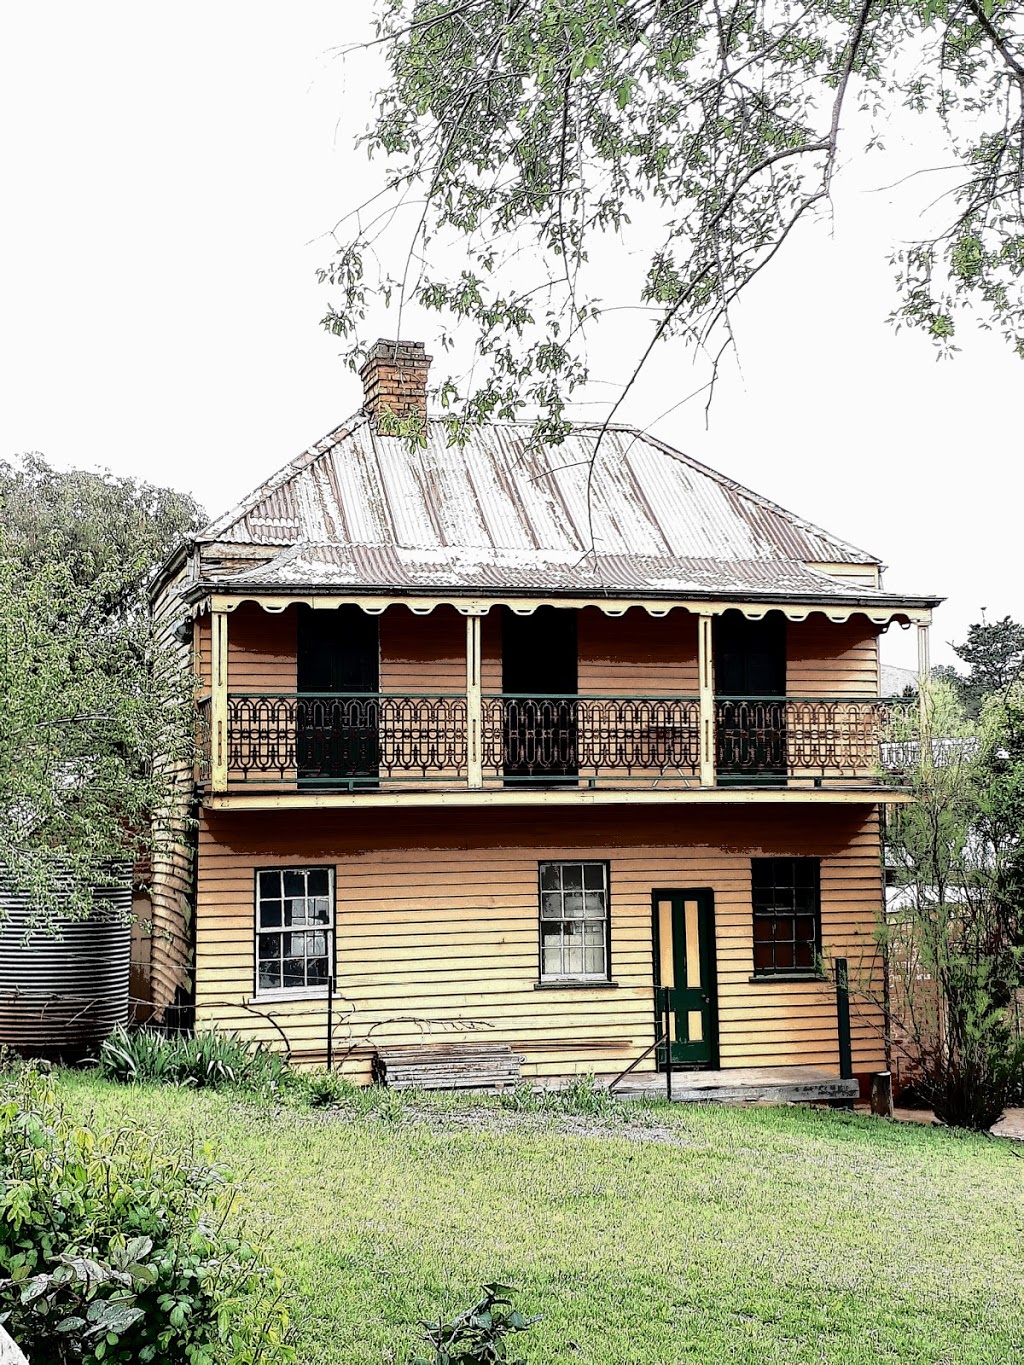 Old Sofala Gaol Cafe | lodging | Barkly St, Sofala NSW 2795, Australia | 0263377064 OR +61 2 6337 7064